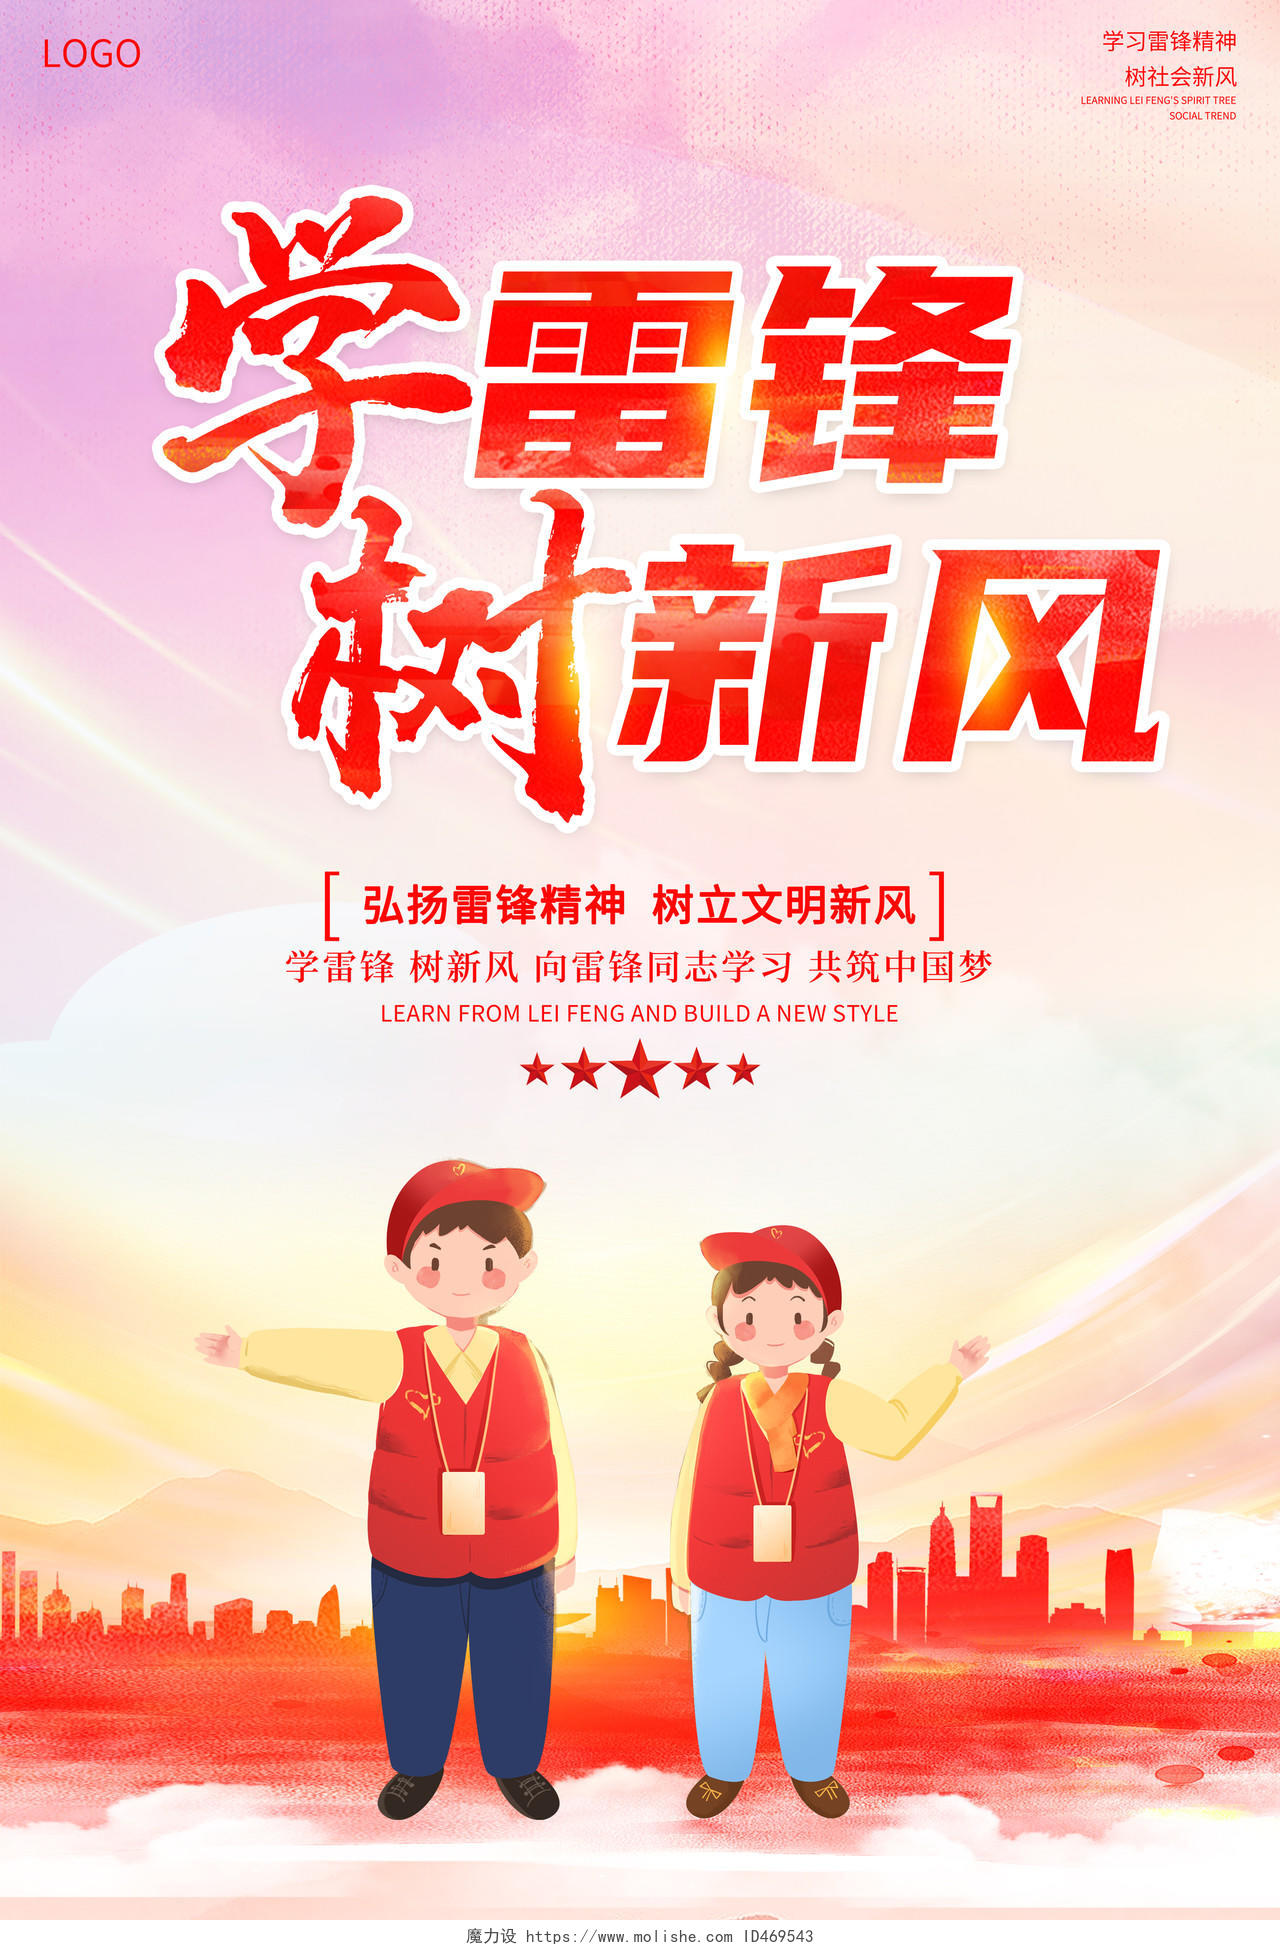 中国风水彩3月5日学雷锋树新风宣传海报设计学雷锋纪念日学雷锋树新风